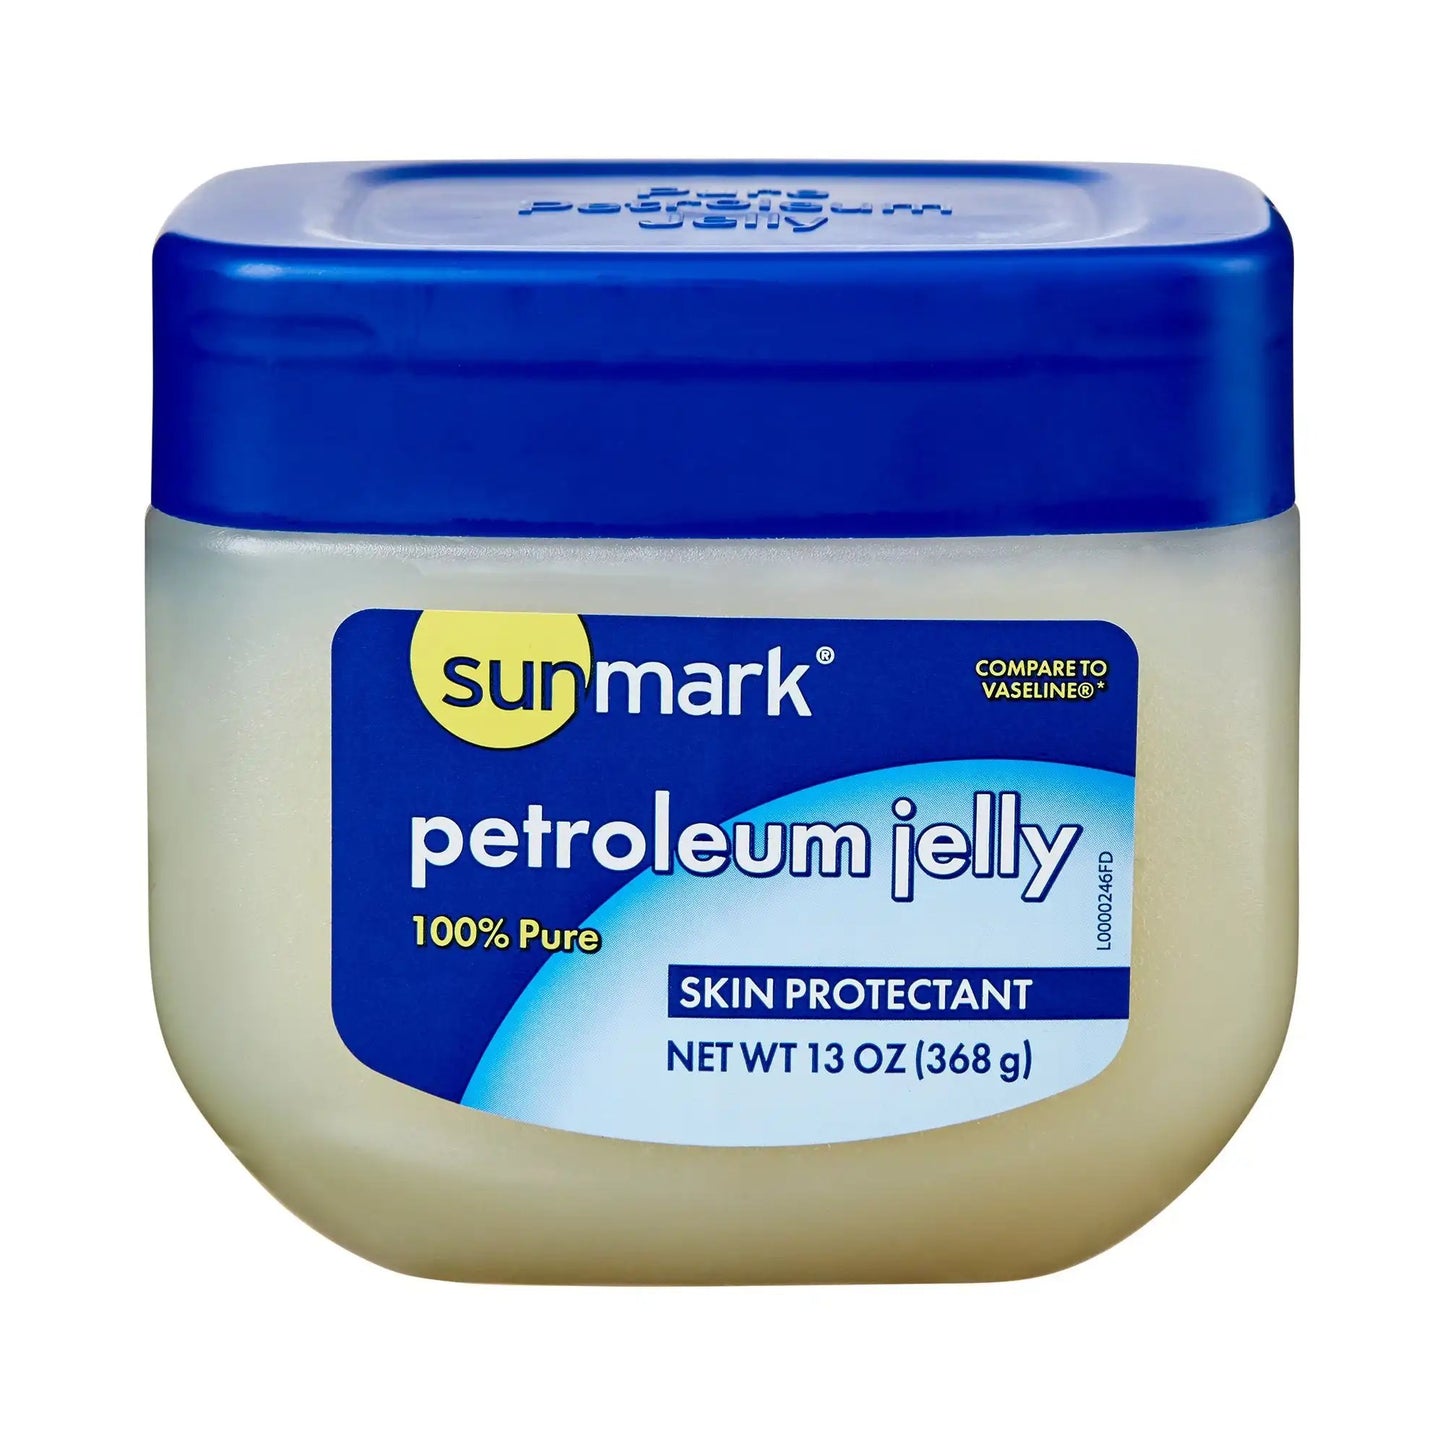 sunmark Petroleum Jelly, 13 oz. Jar